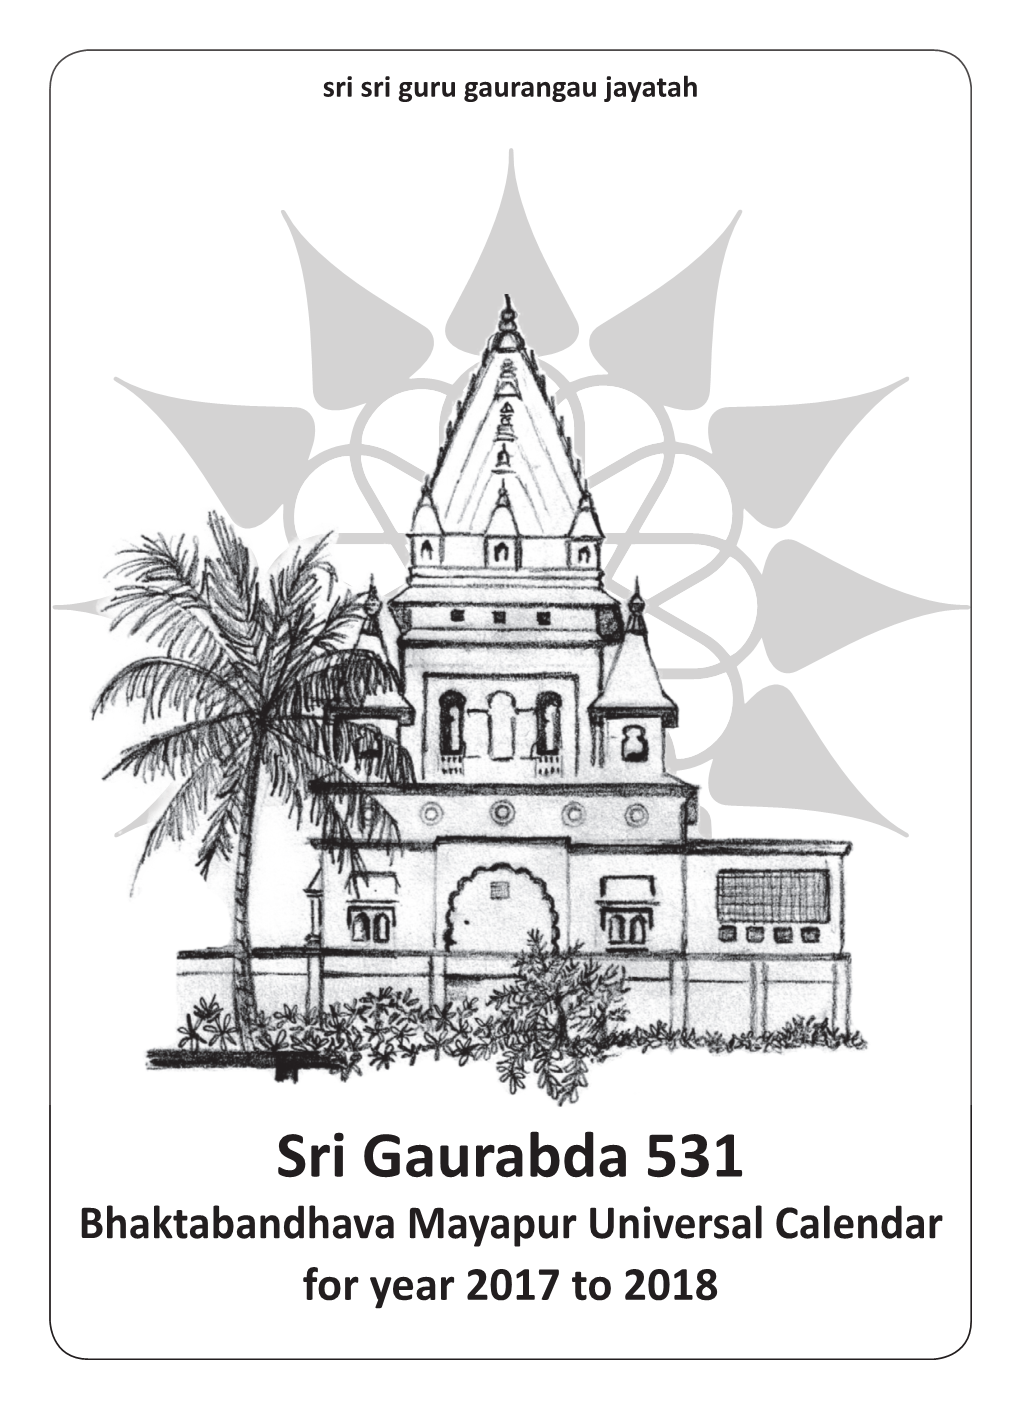 Sri Gaurabda